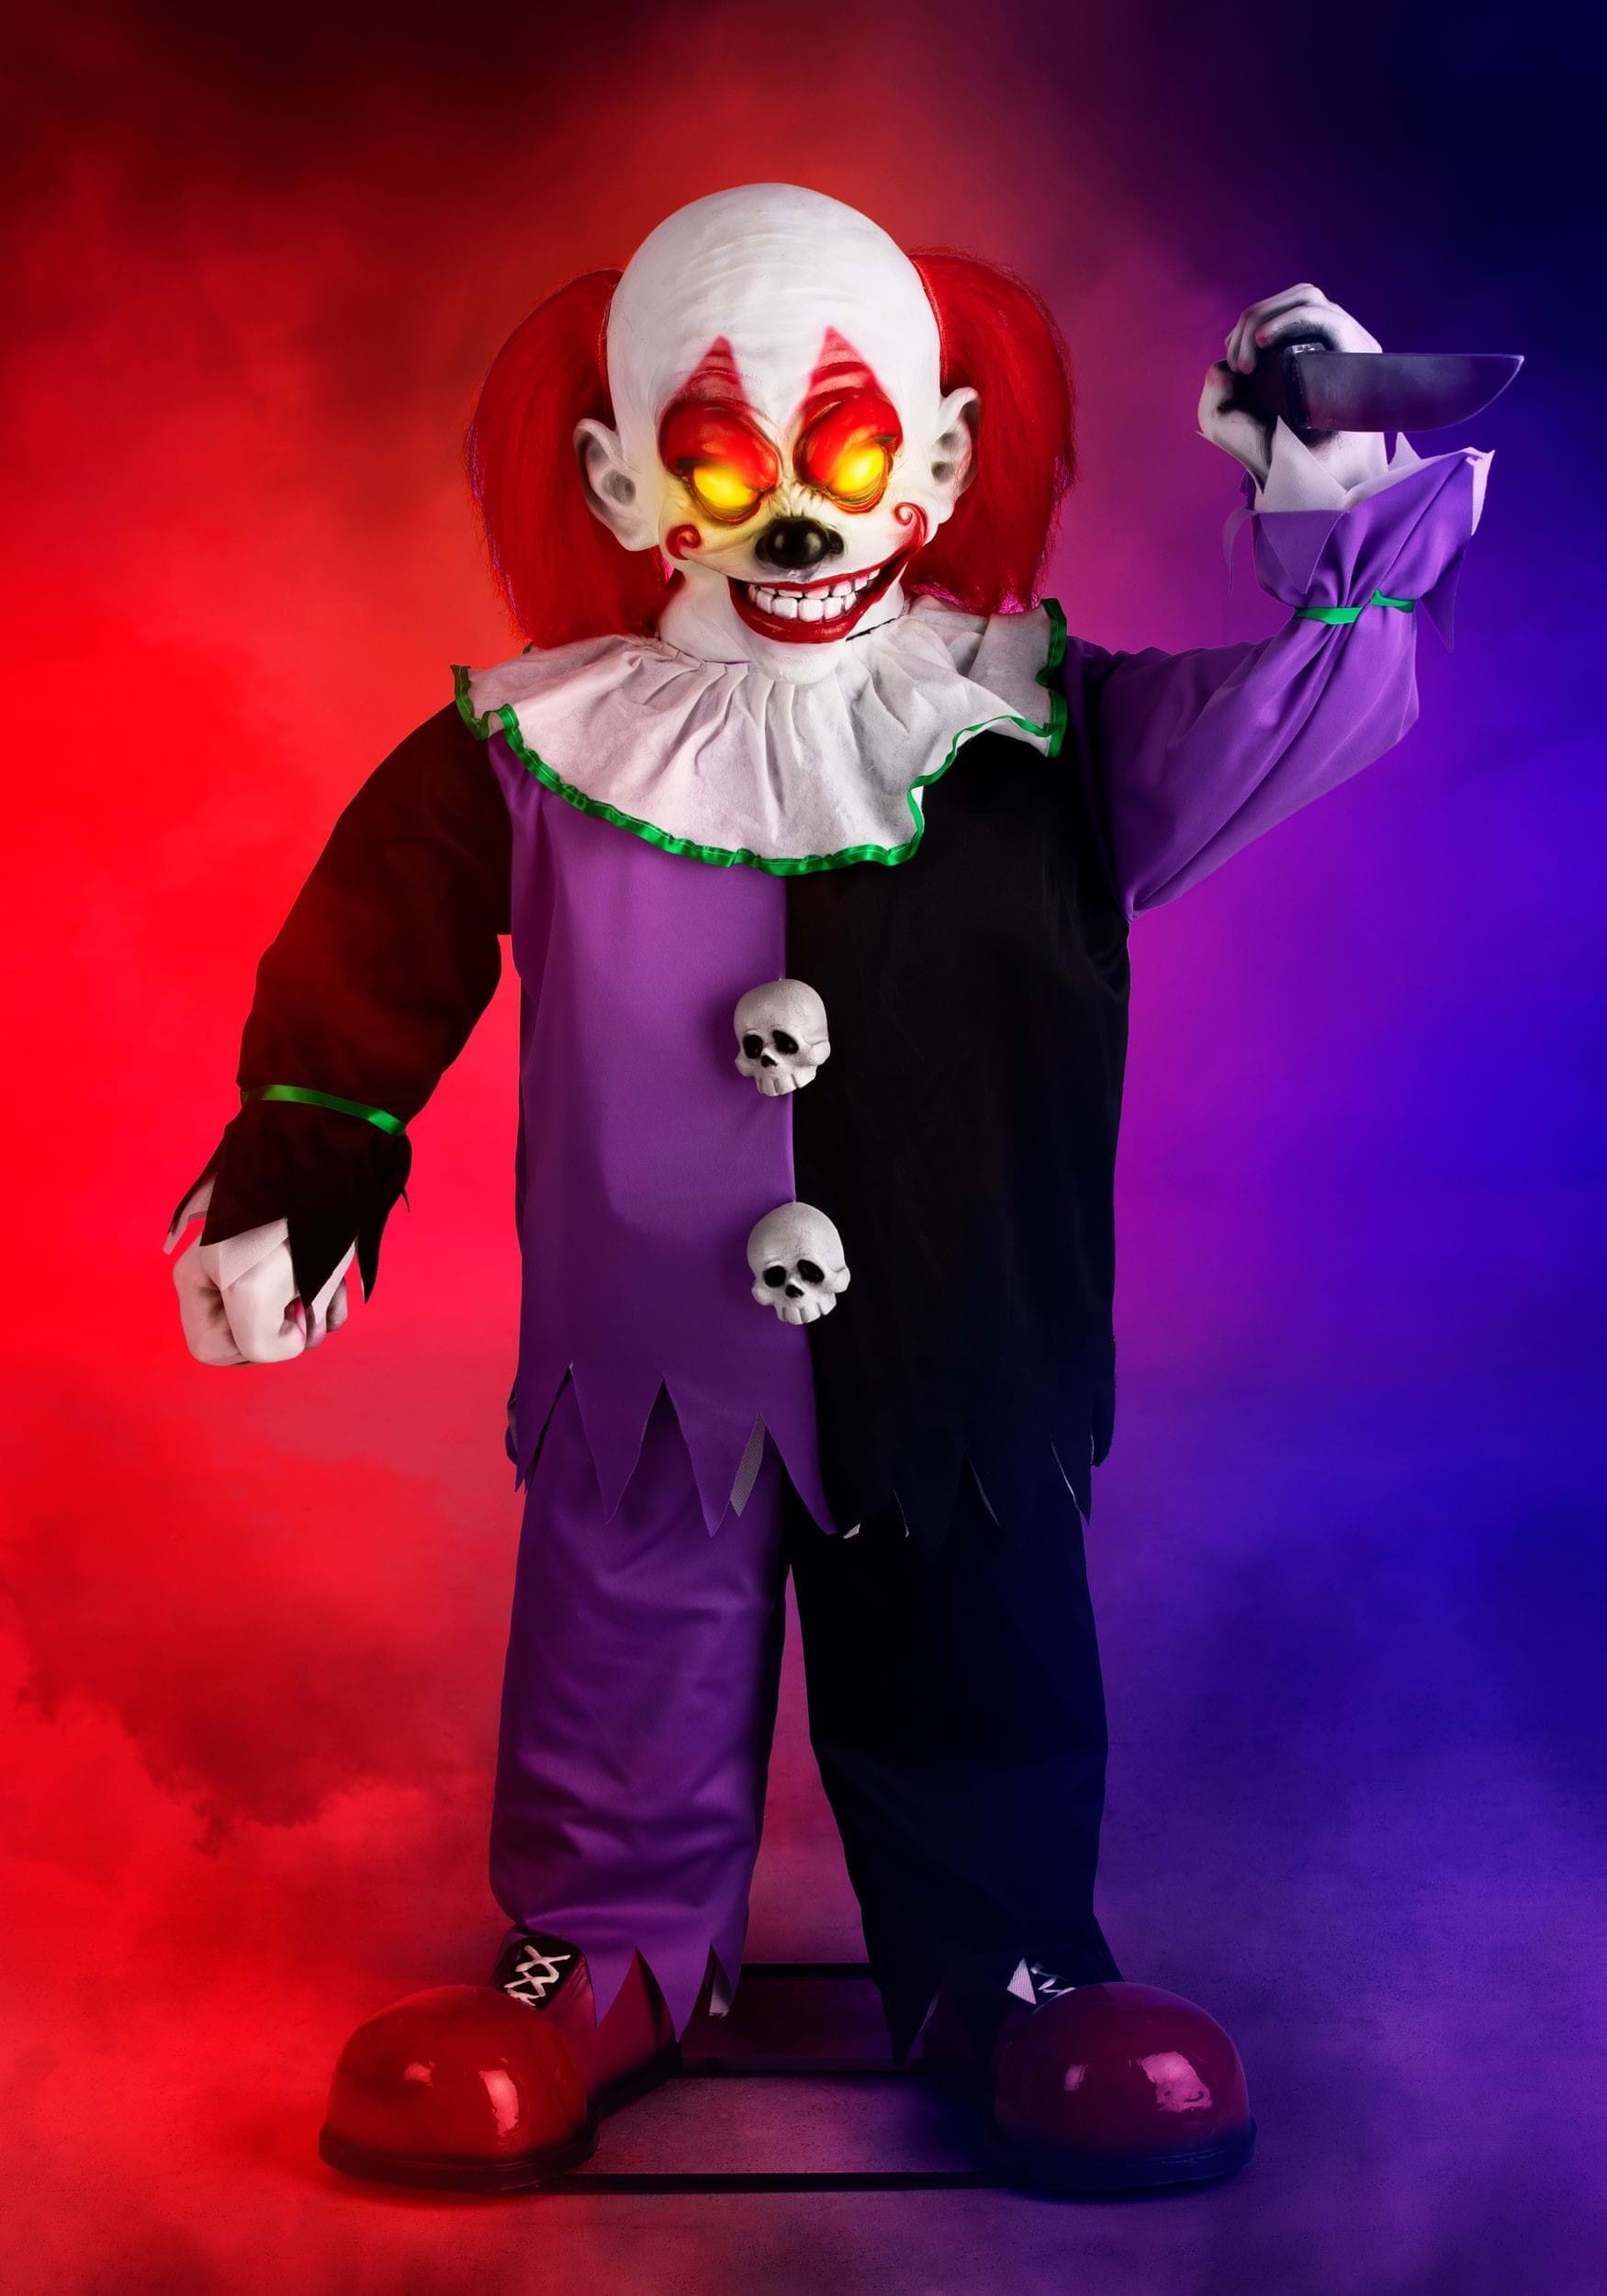 Animated Little Killer Clown Halloween Decoration